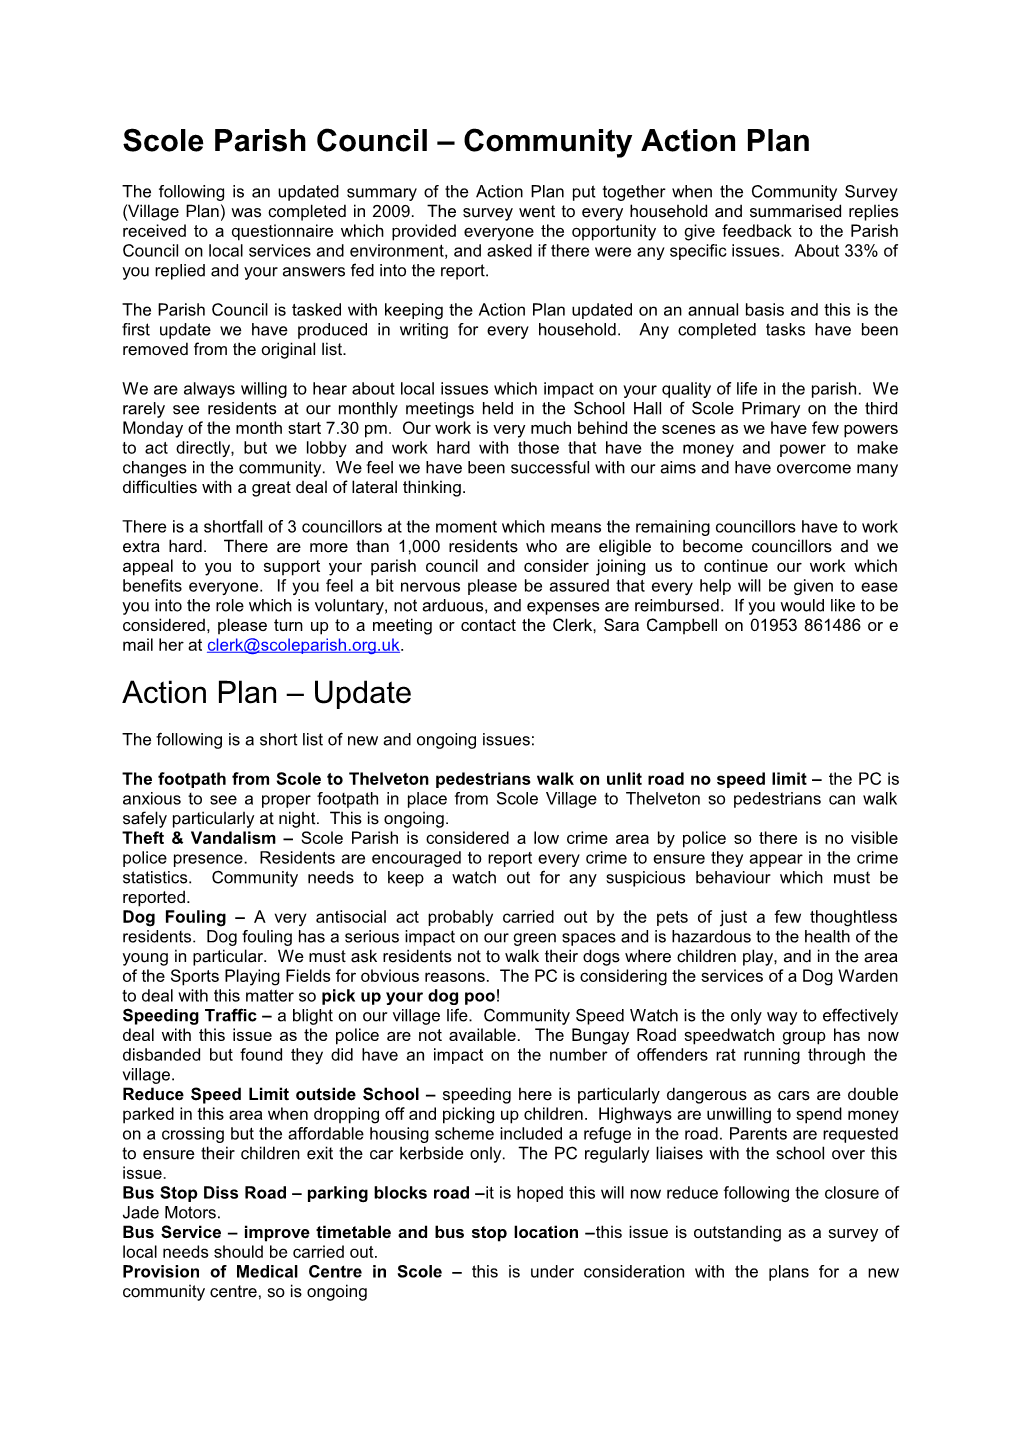 Scole Parish Council Community Action Plan